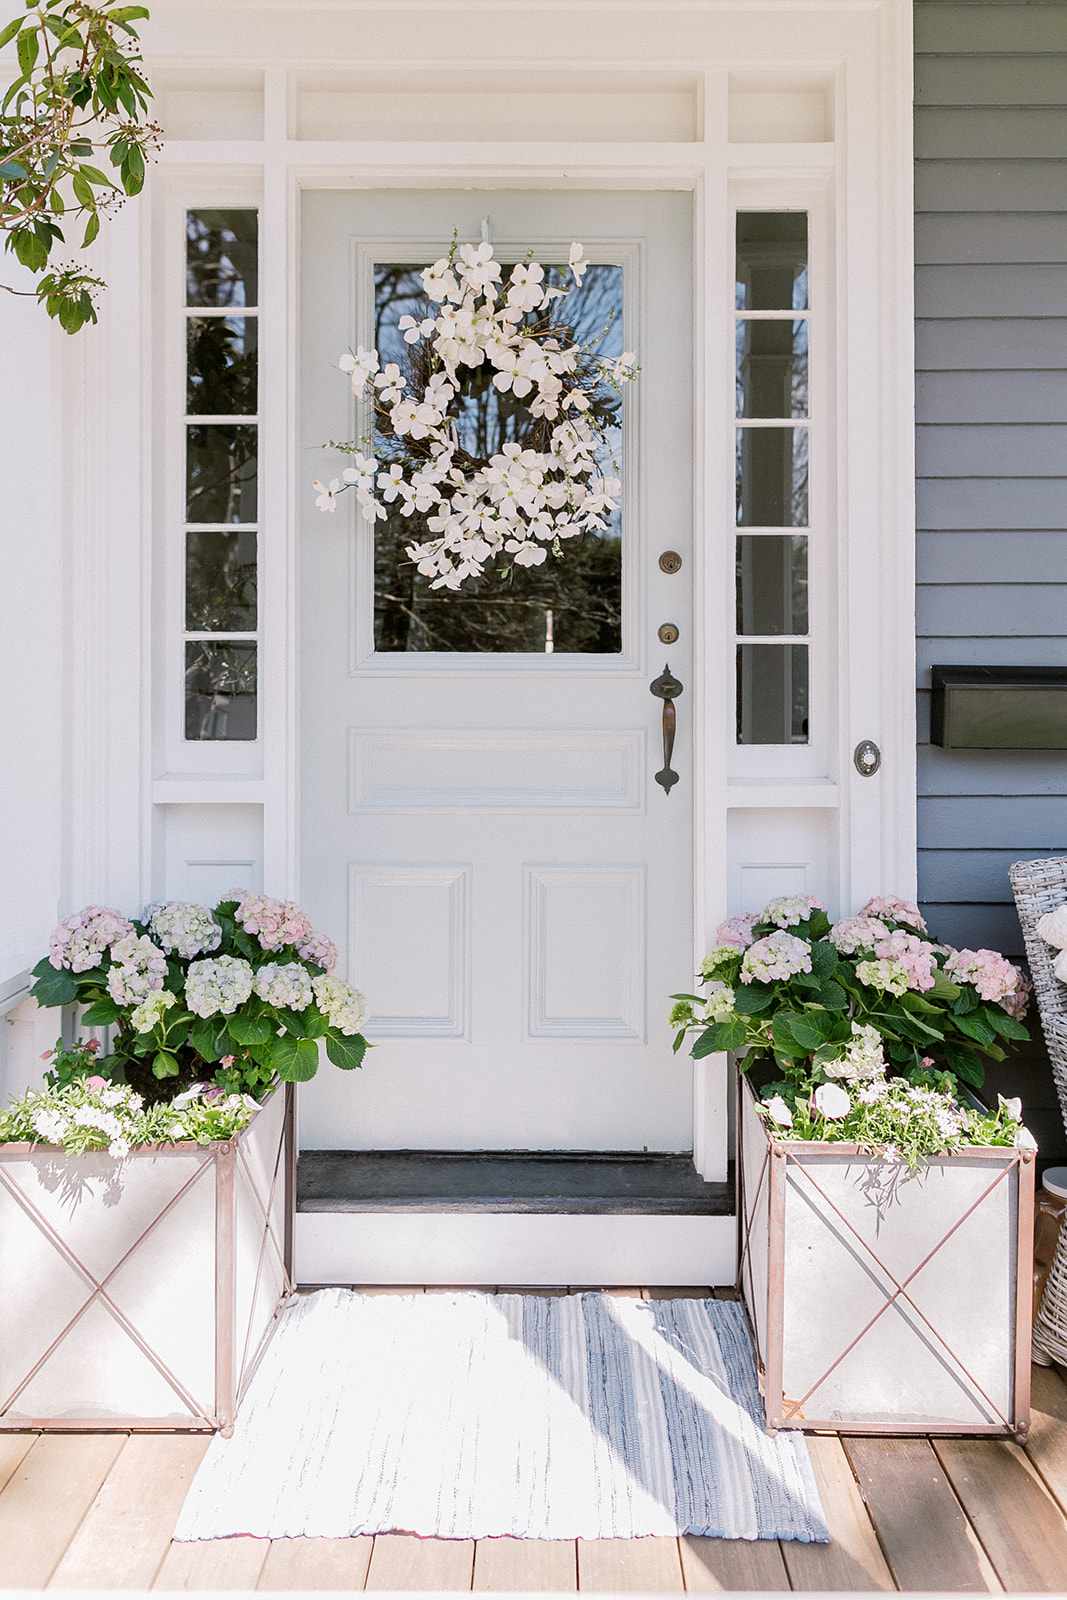 Eine mit Blumen geschmückte Haustür in hellem Salbei.